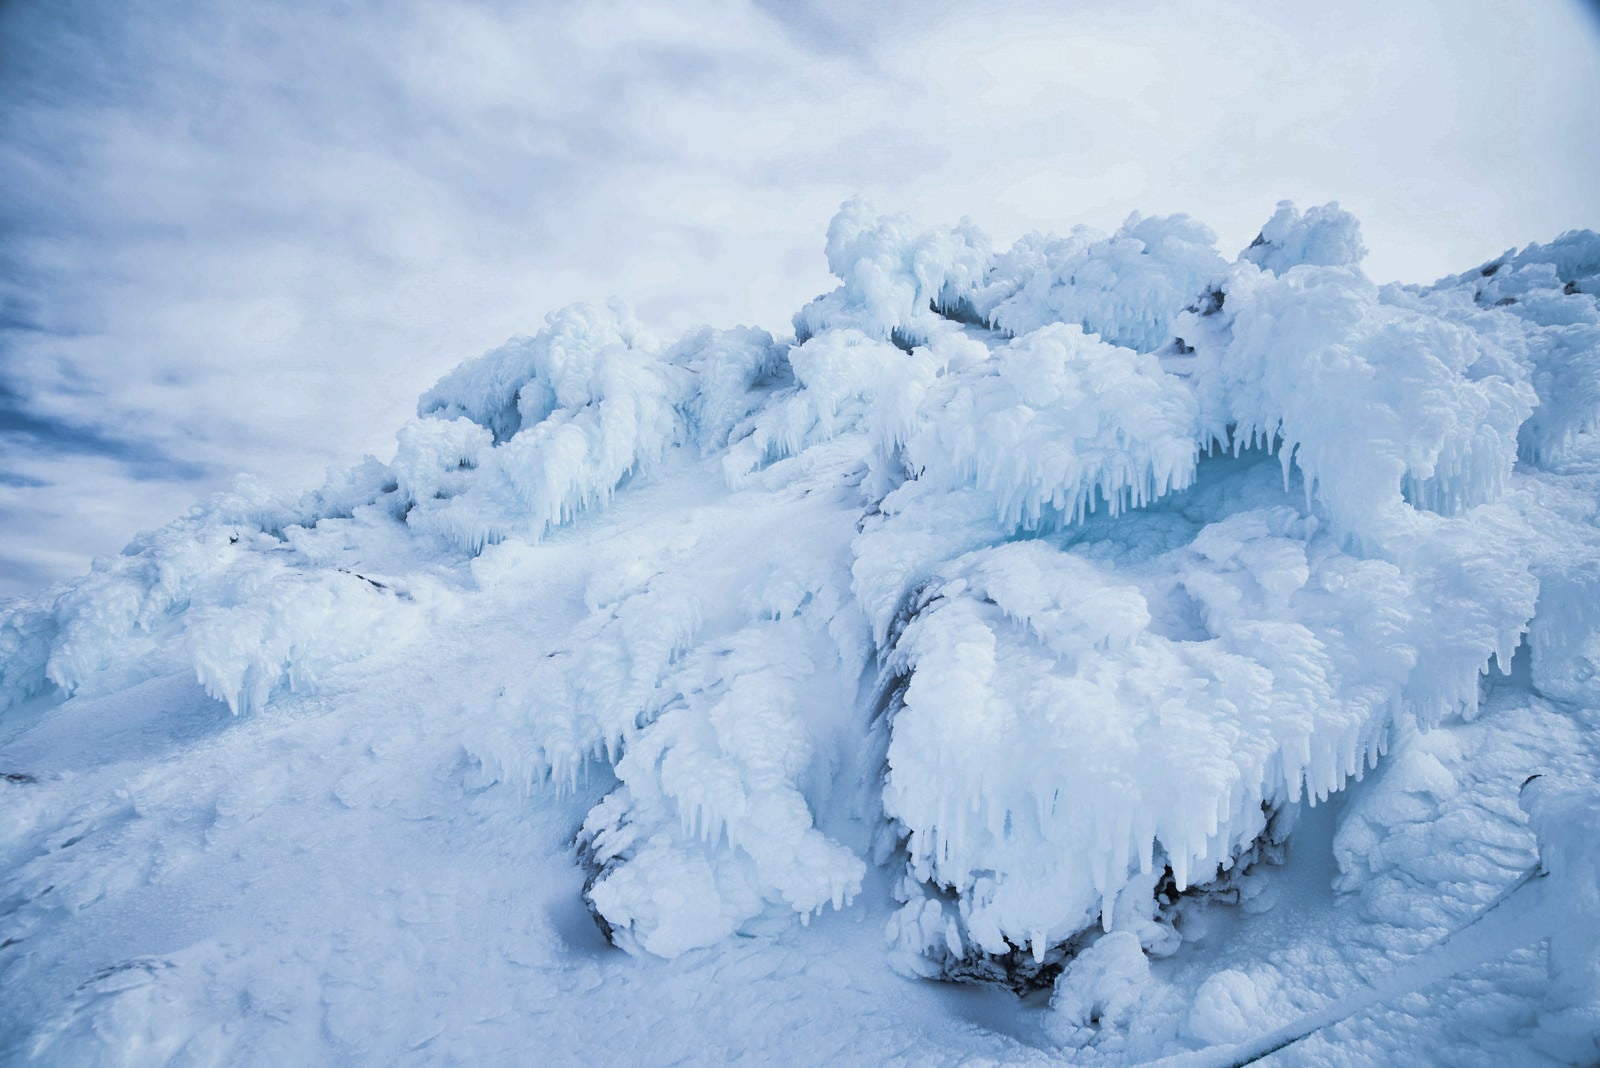 「乗鞍岳に現れた氷のオブジェ」の写真